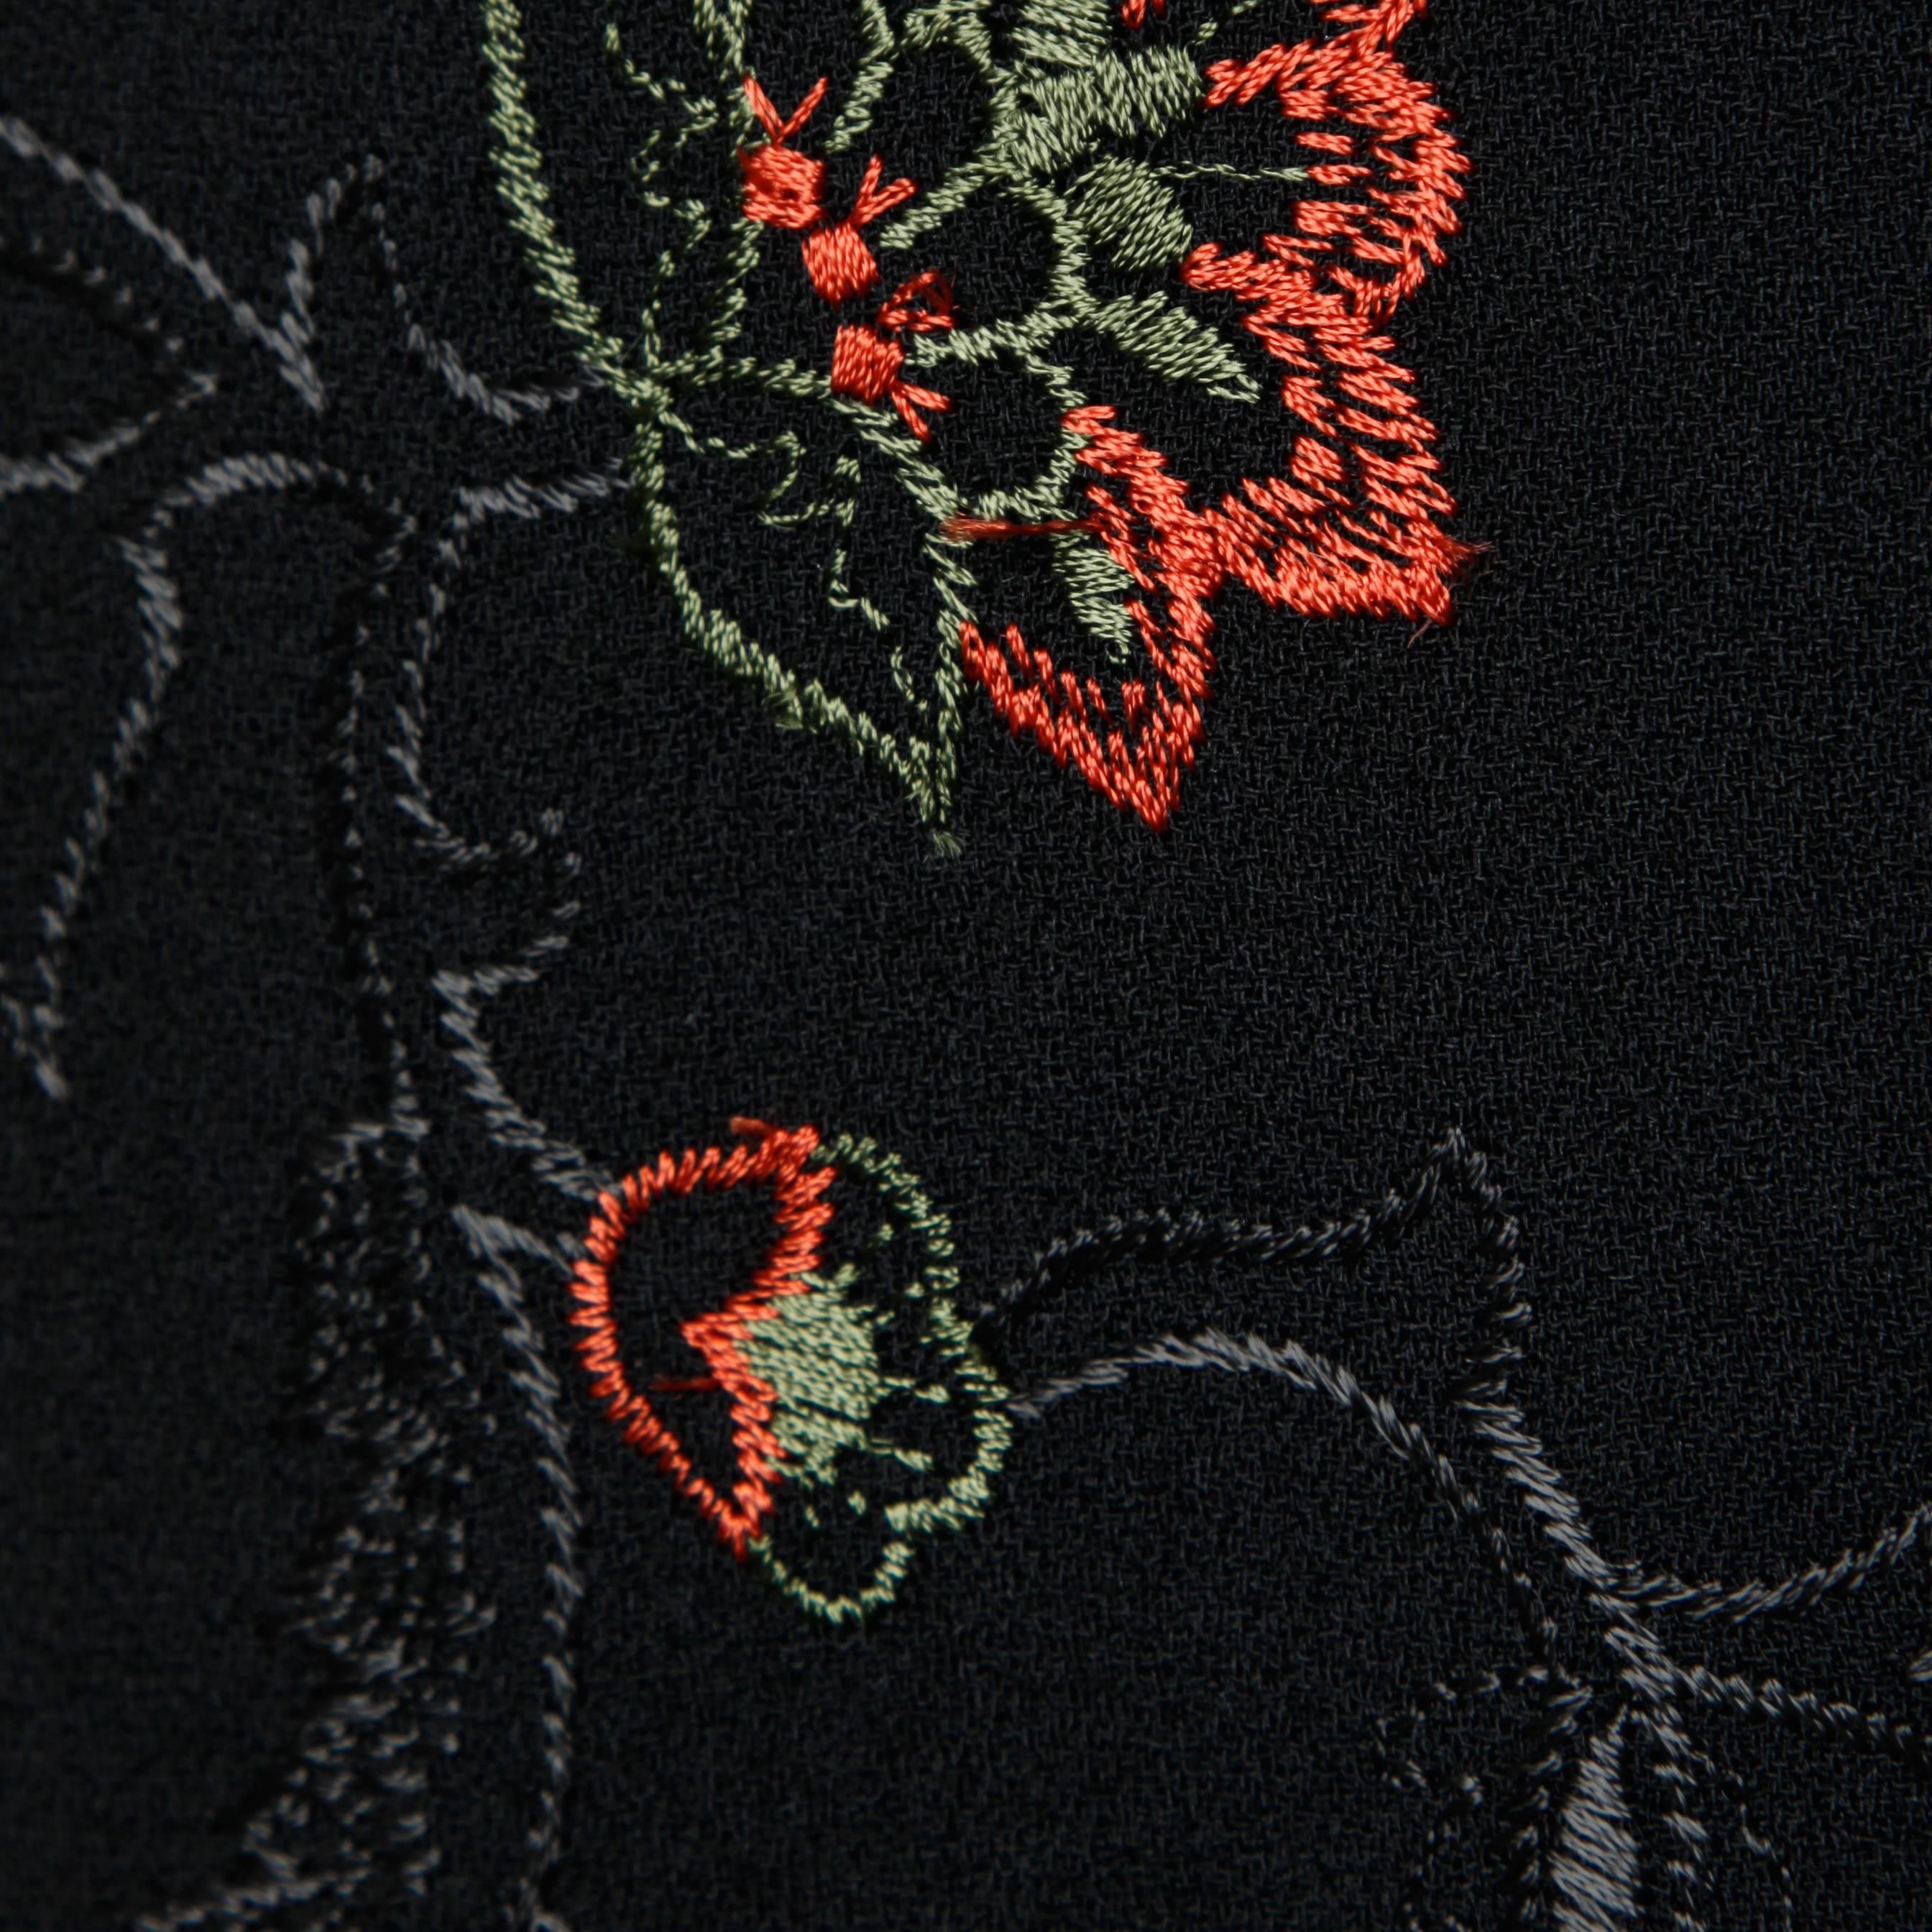 Oscar de la Renta Wool Blazer Jacket with Floral Embroidery 3